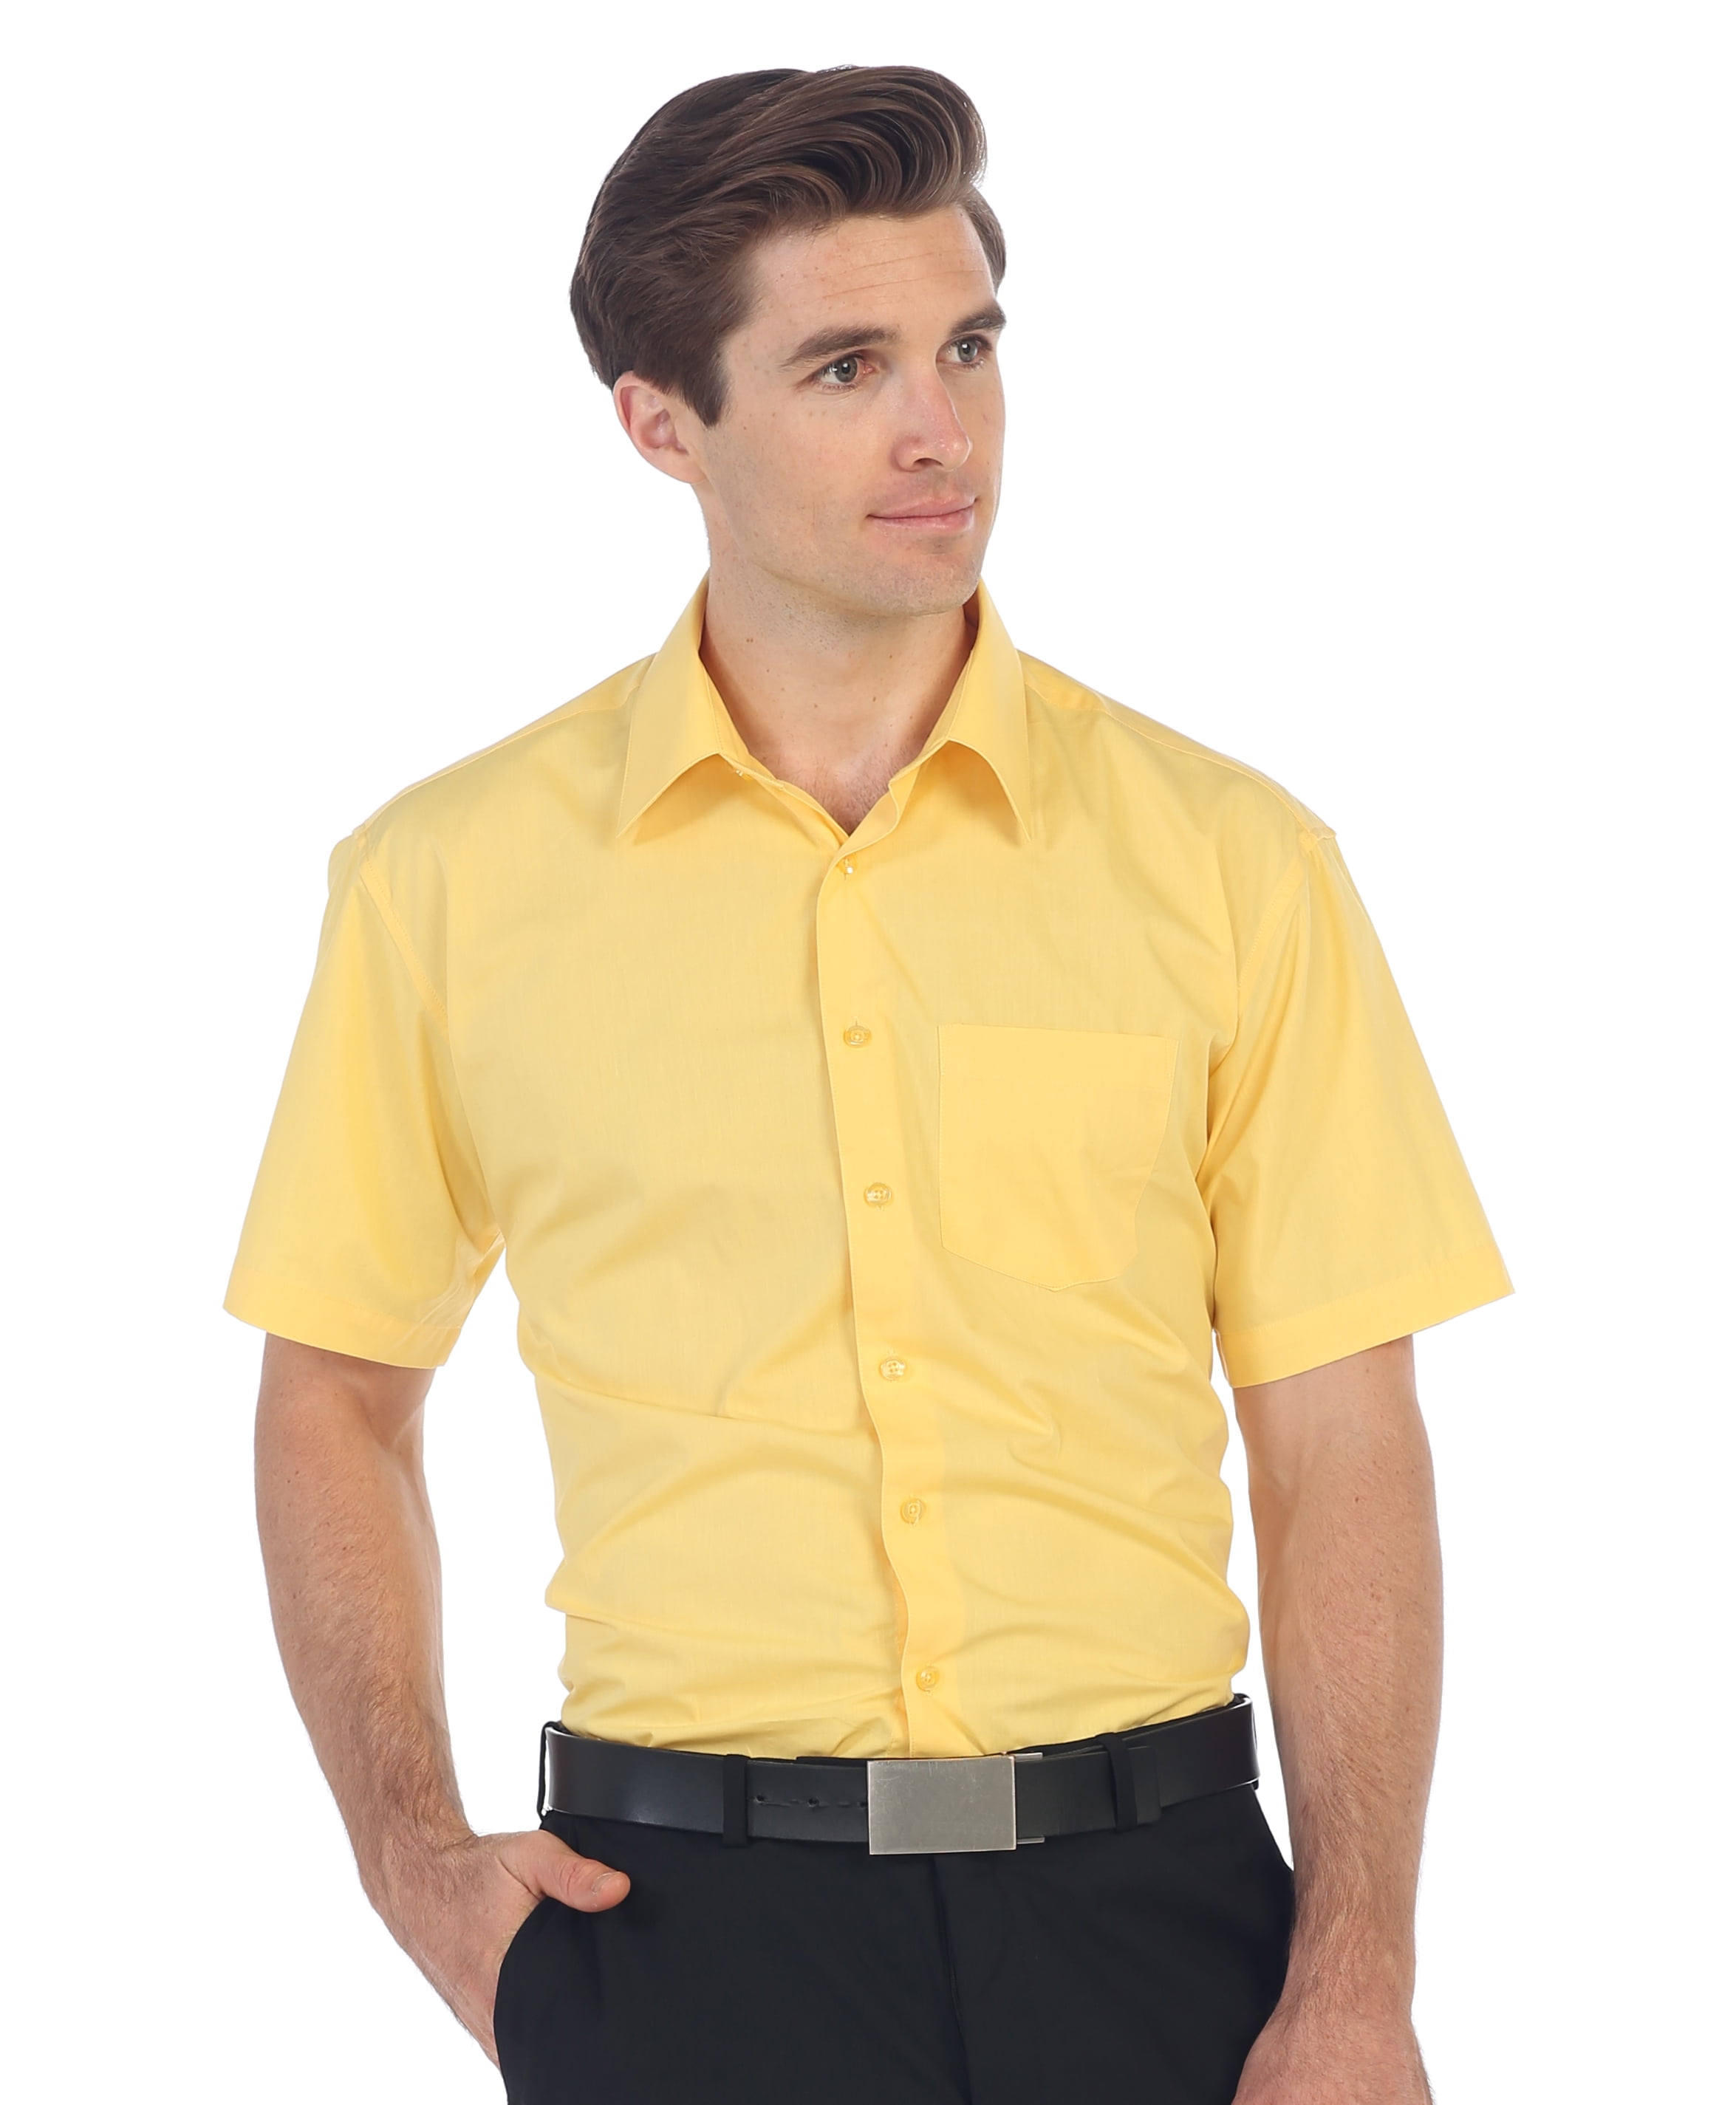 Mustard Yellow Dress Shirt Short Sleeve ...